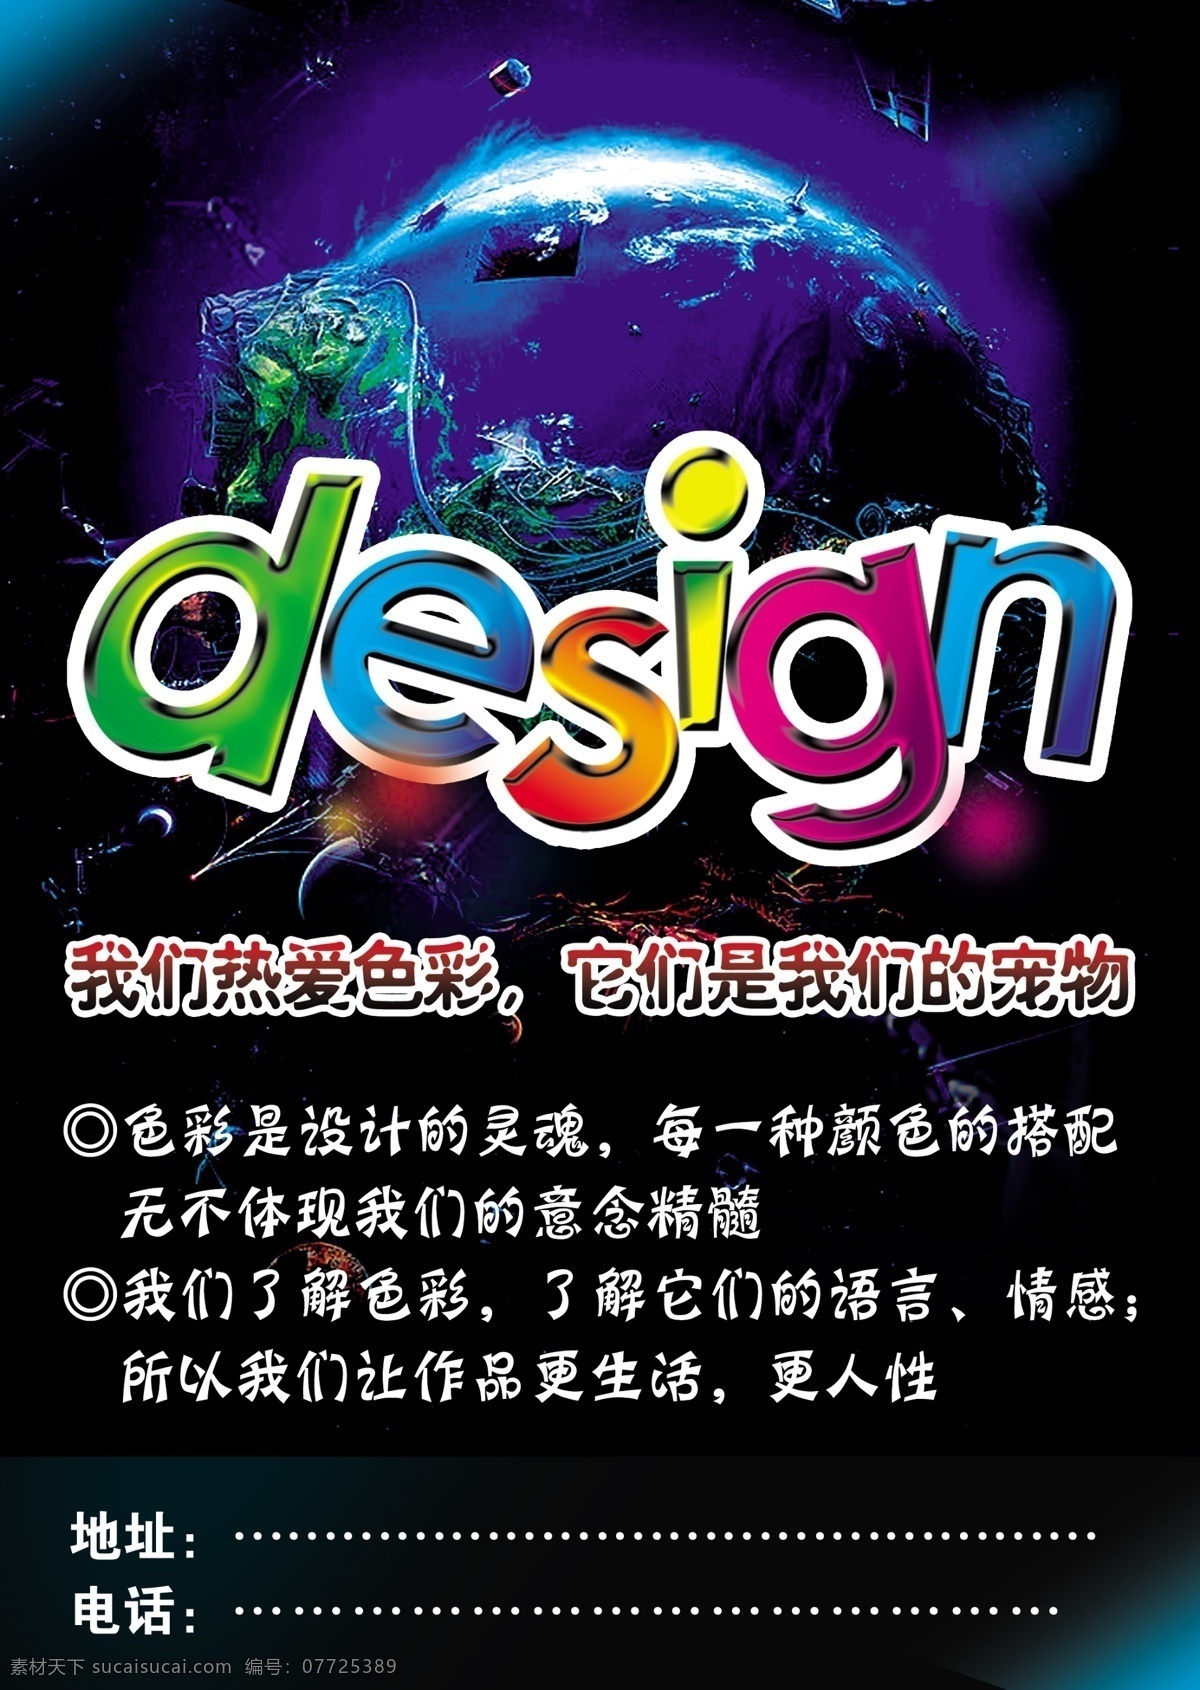 广告公司 形象 design 宠物 广告 广告设计模板 画册设计 企业形象 色彩 专业 企业画册封面